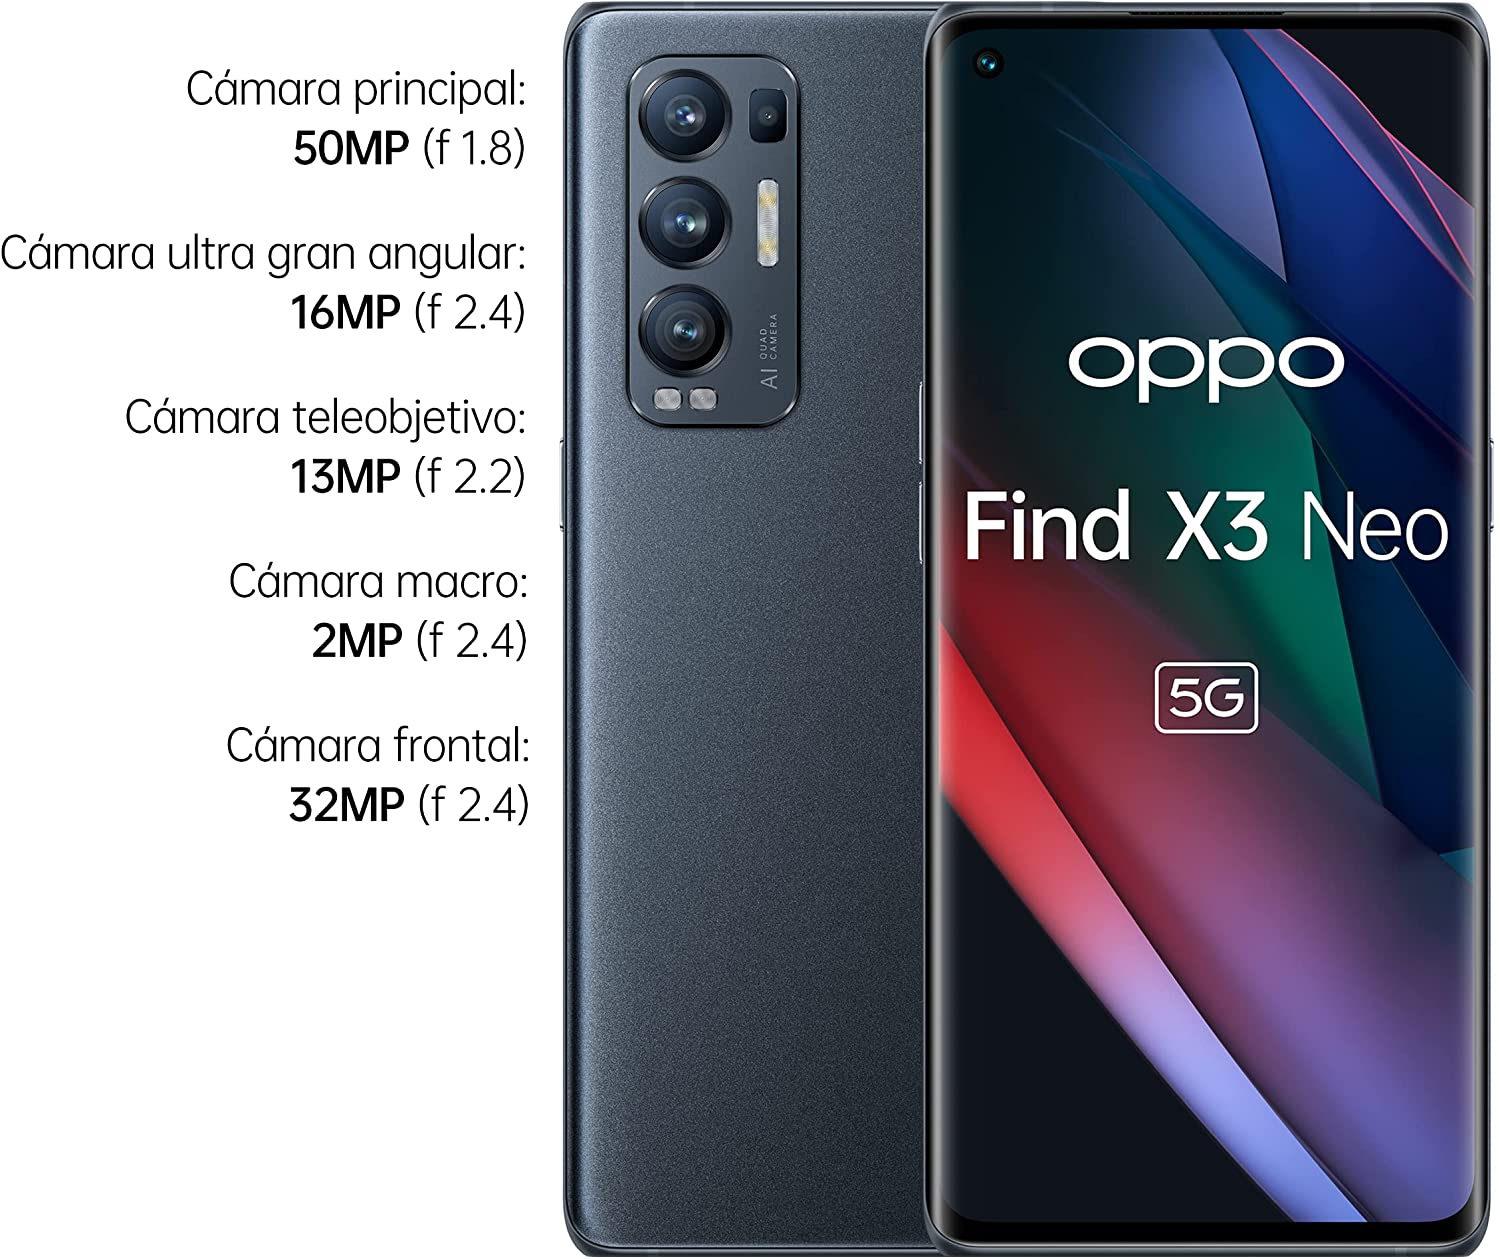 Móvil Oppo Find X3 Neo 5G, 12GB de RAM + 256GB - Plata